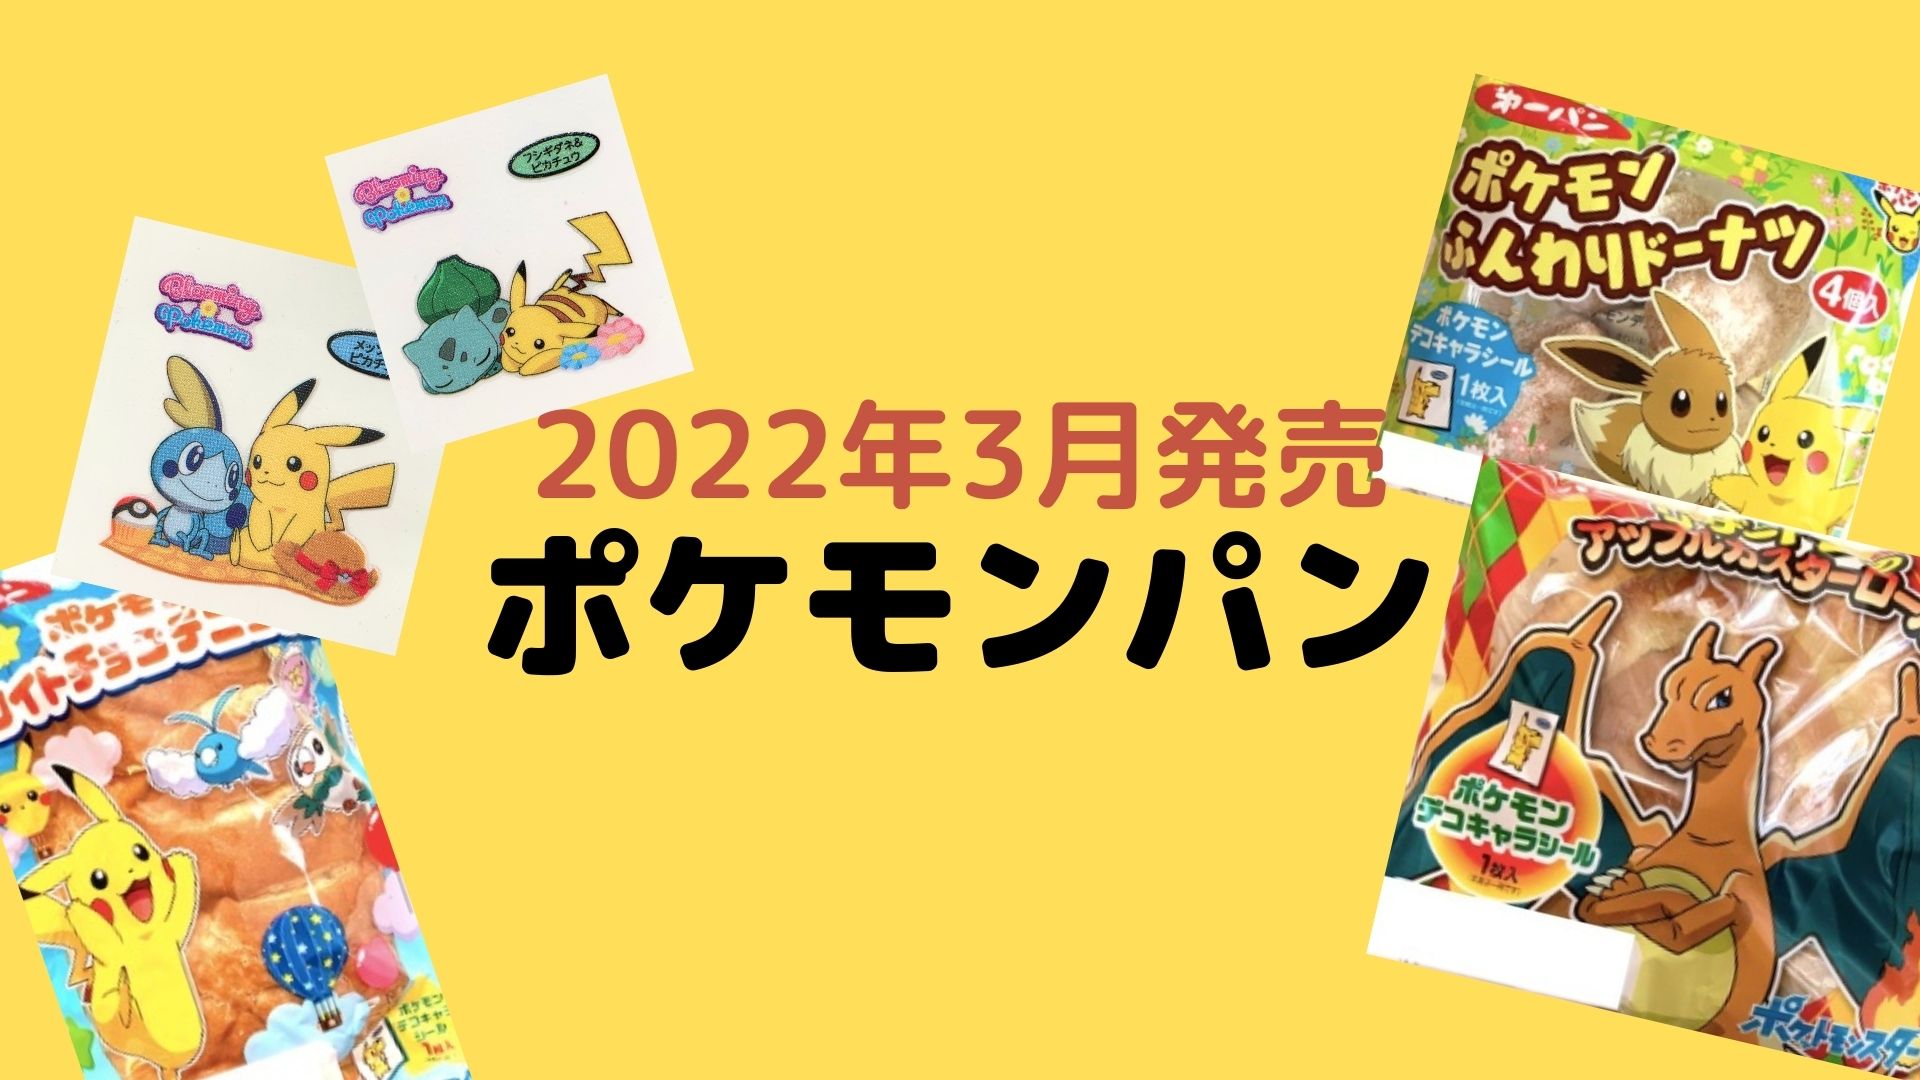 ポケモンパン 22年3月発売 を紹介 断面図 おいしい食べ方も おいちゃんブログ